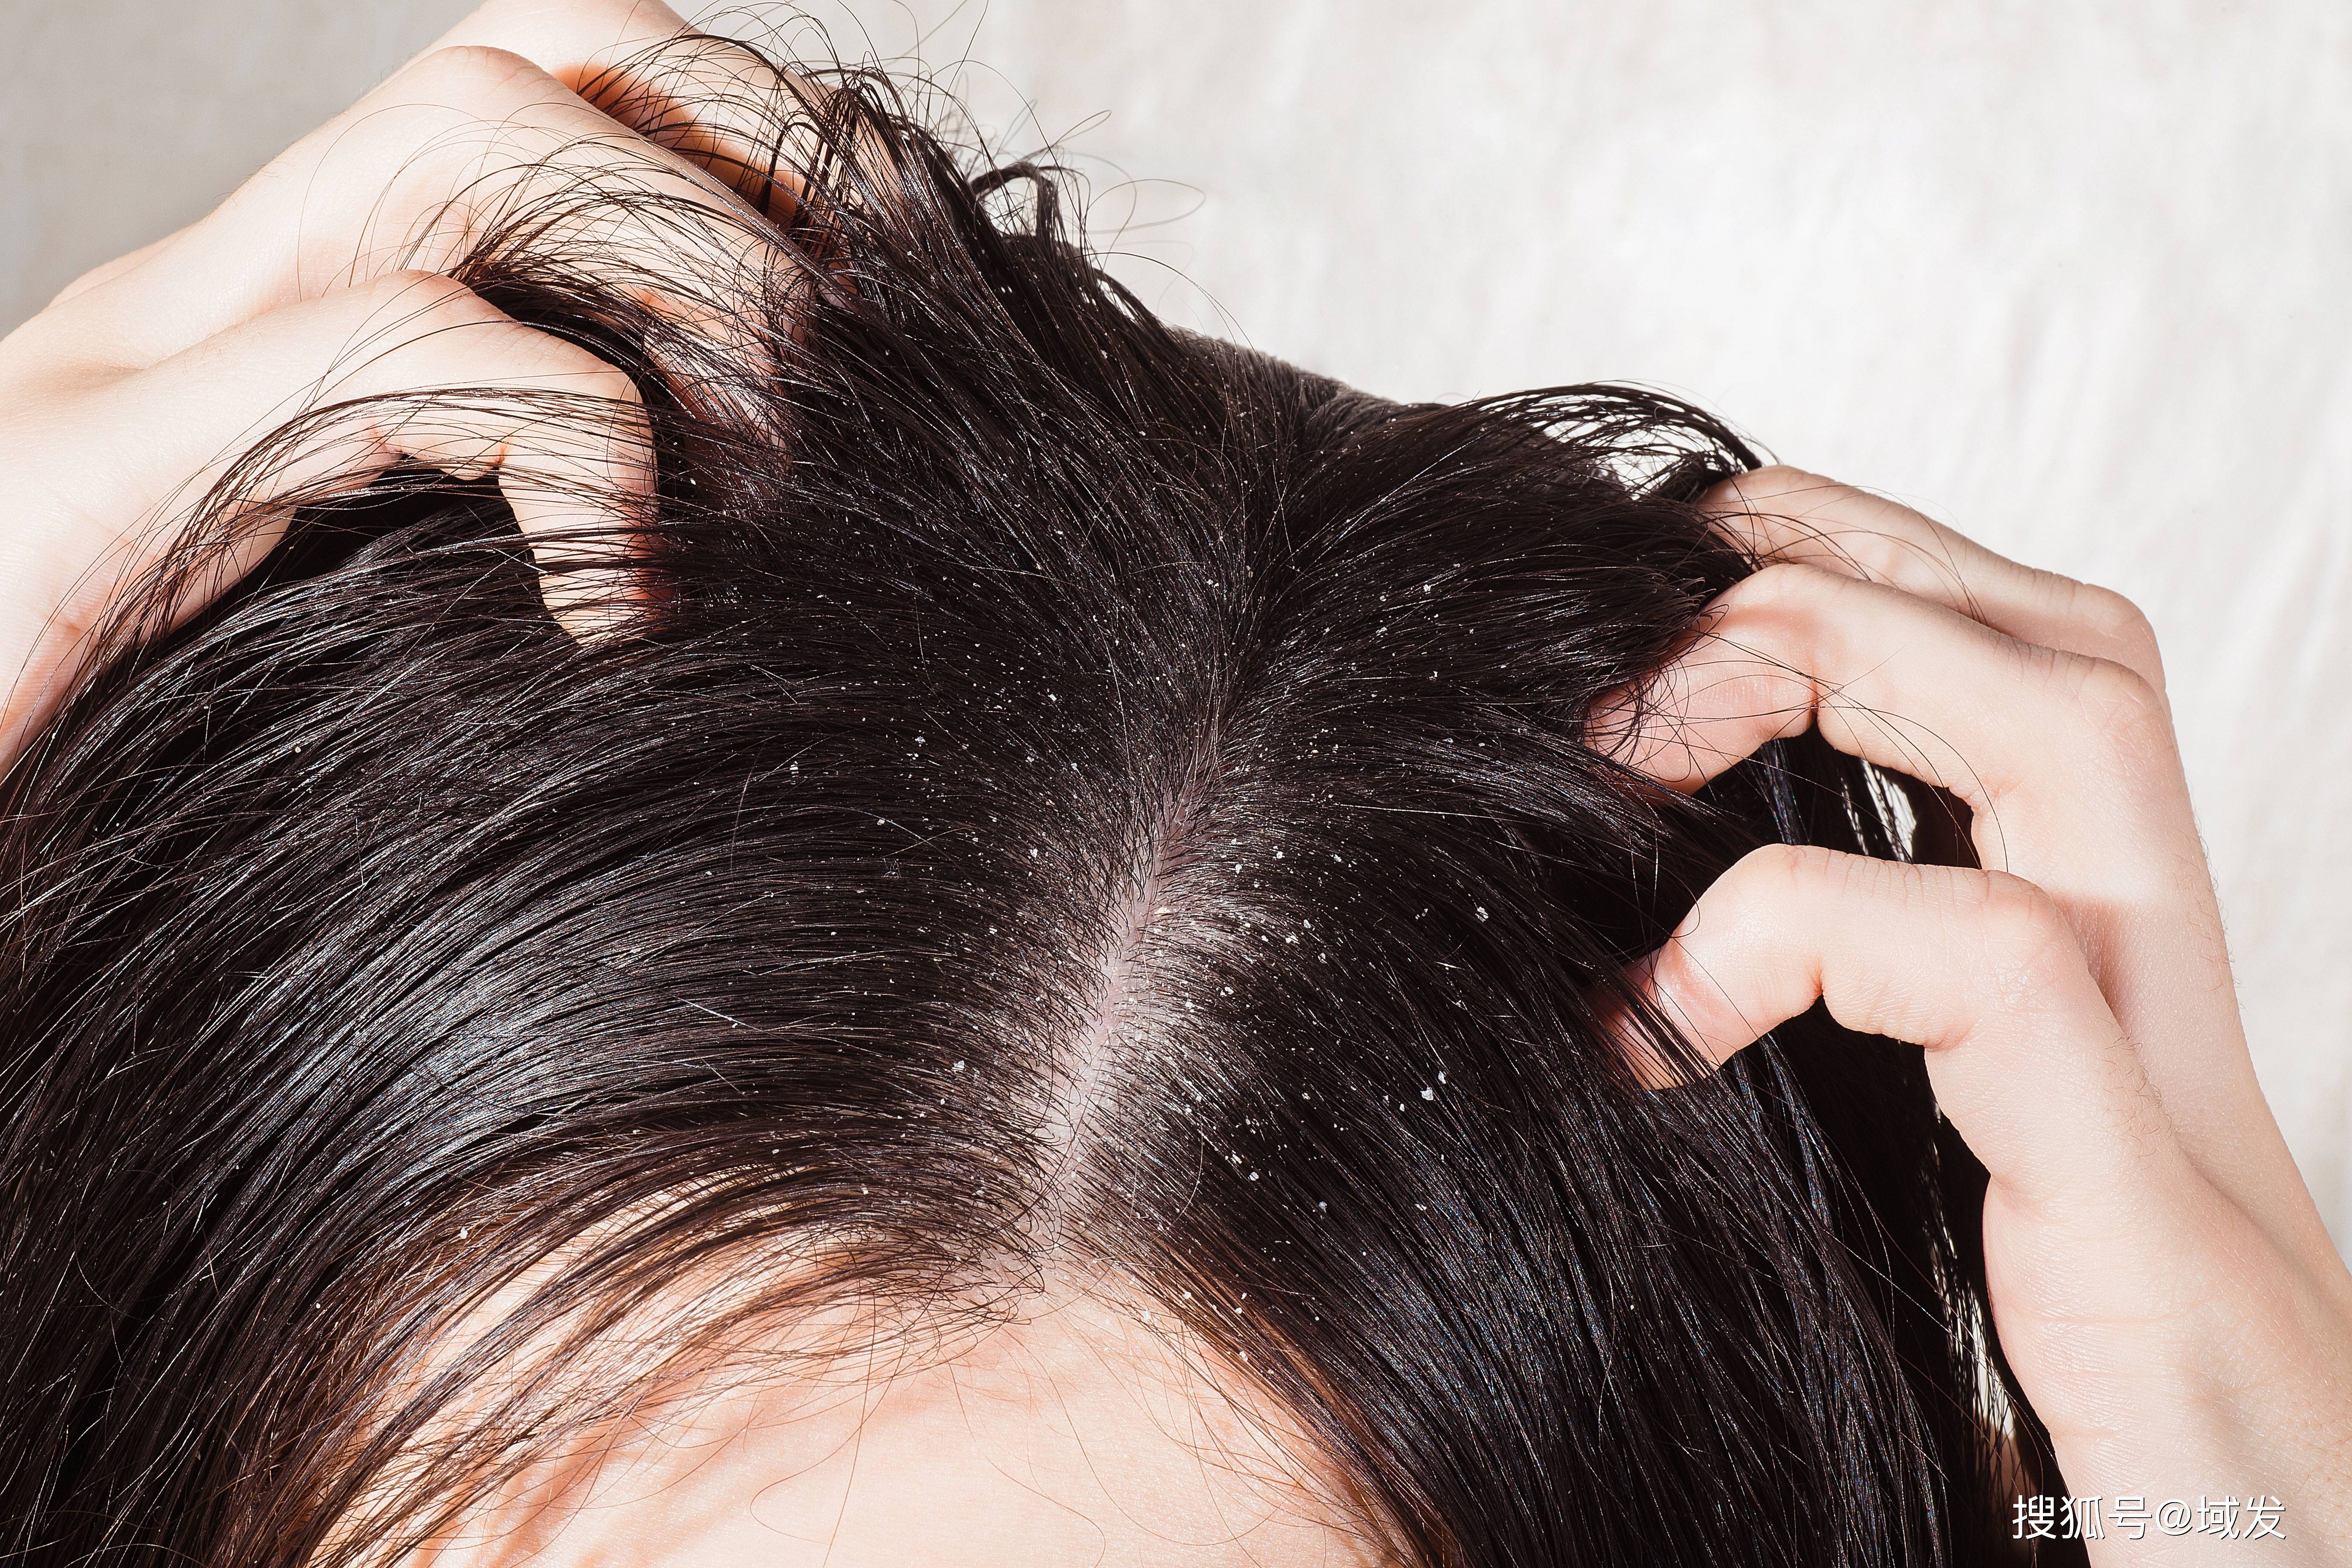 都可能是由于头皮敏感导致的如果头皮发红,瘙痒,干燥,紧绷,甚至掉发